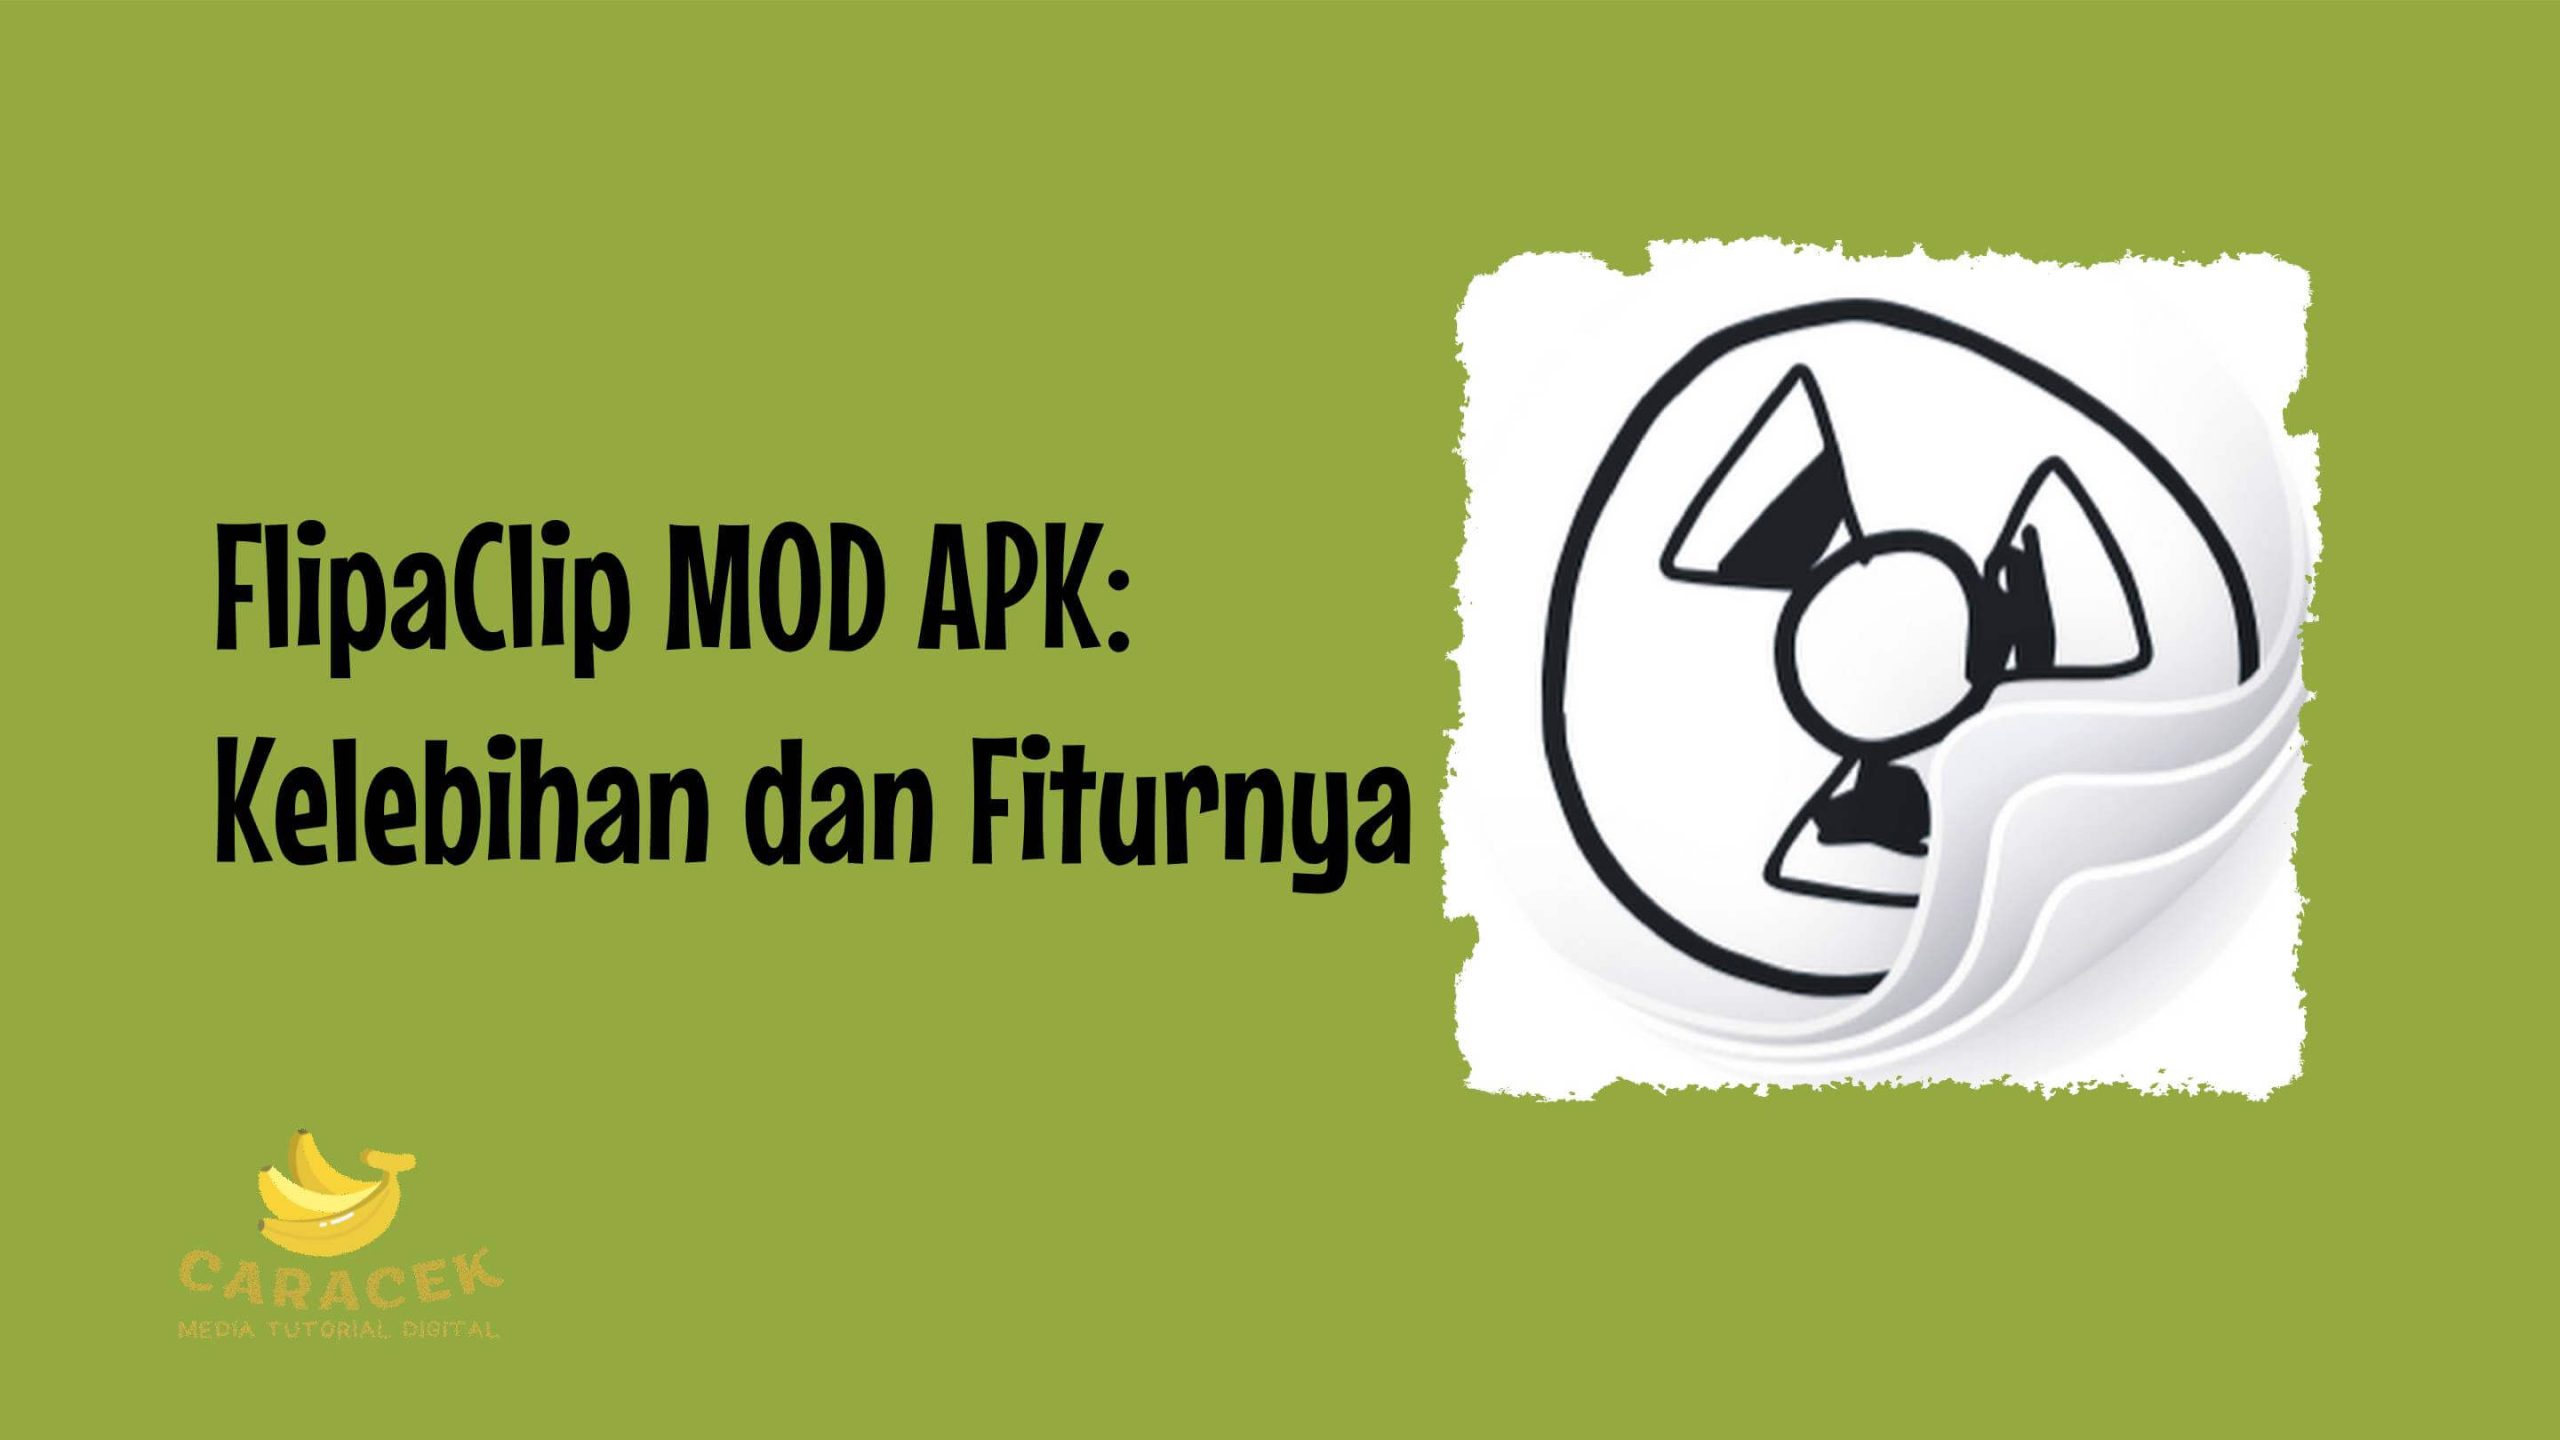 FlipaClip MOD APK